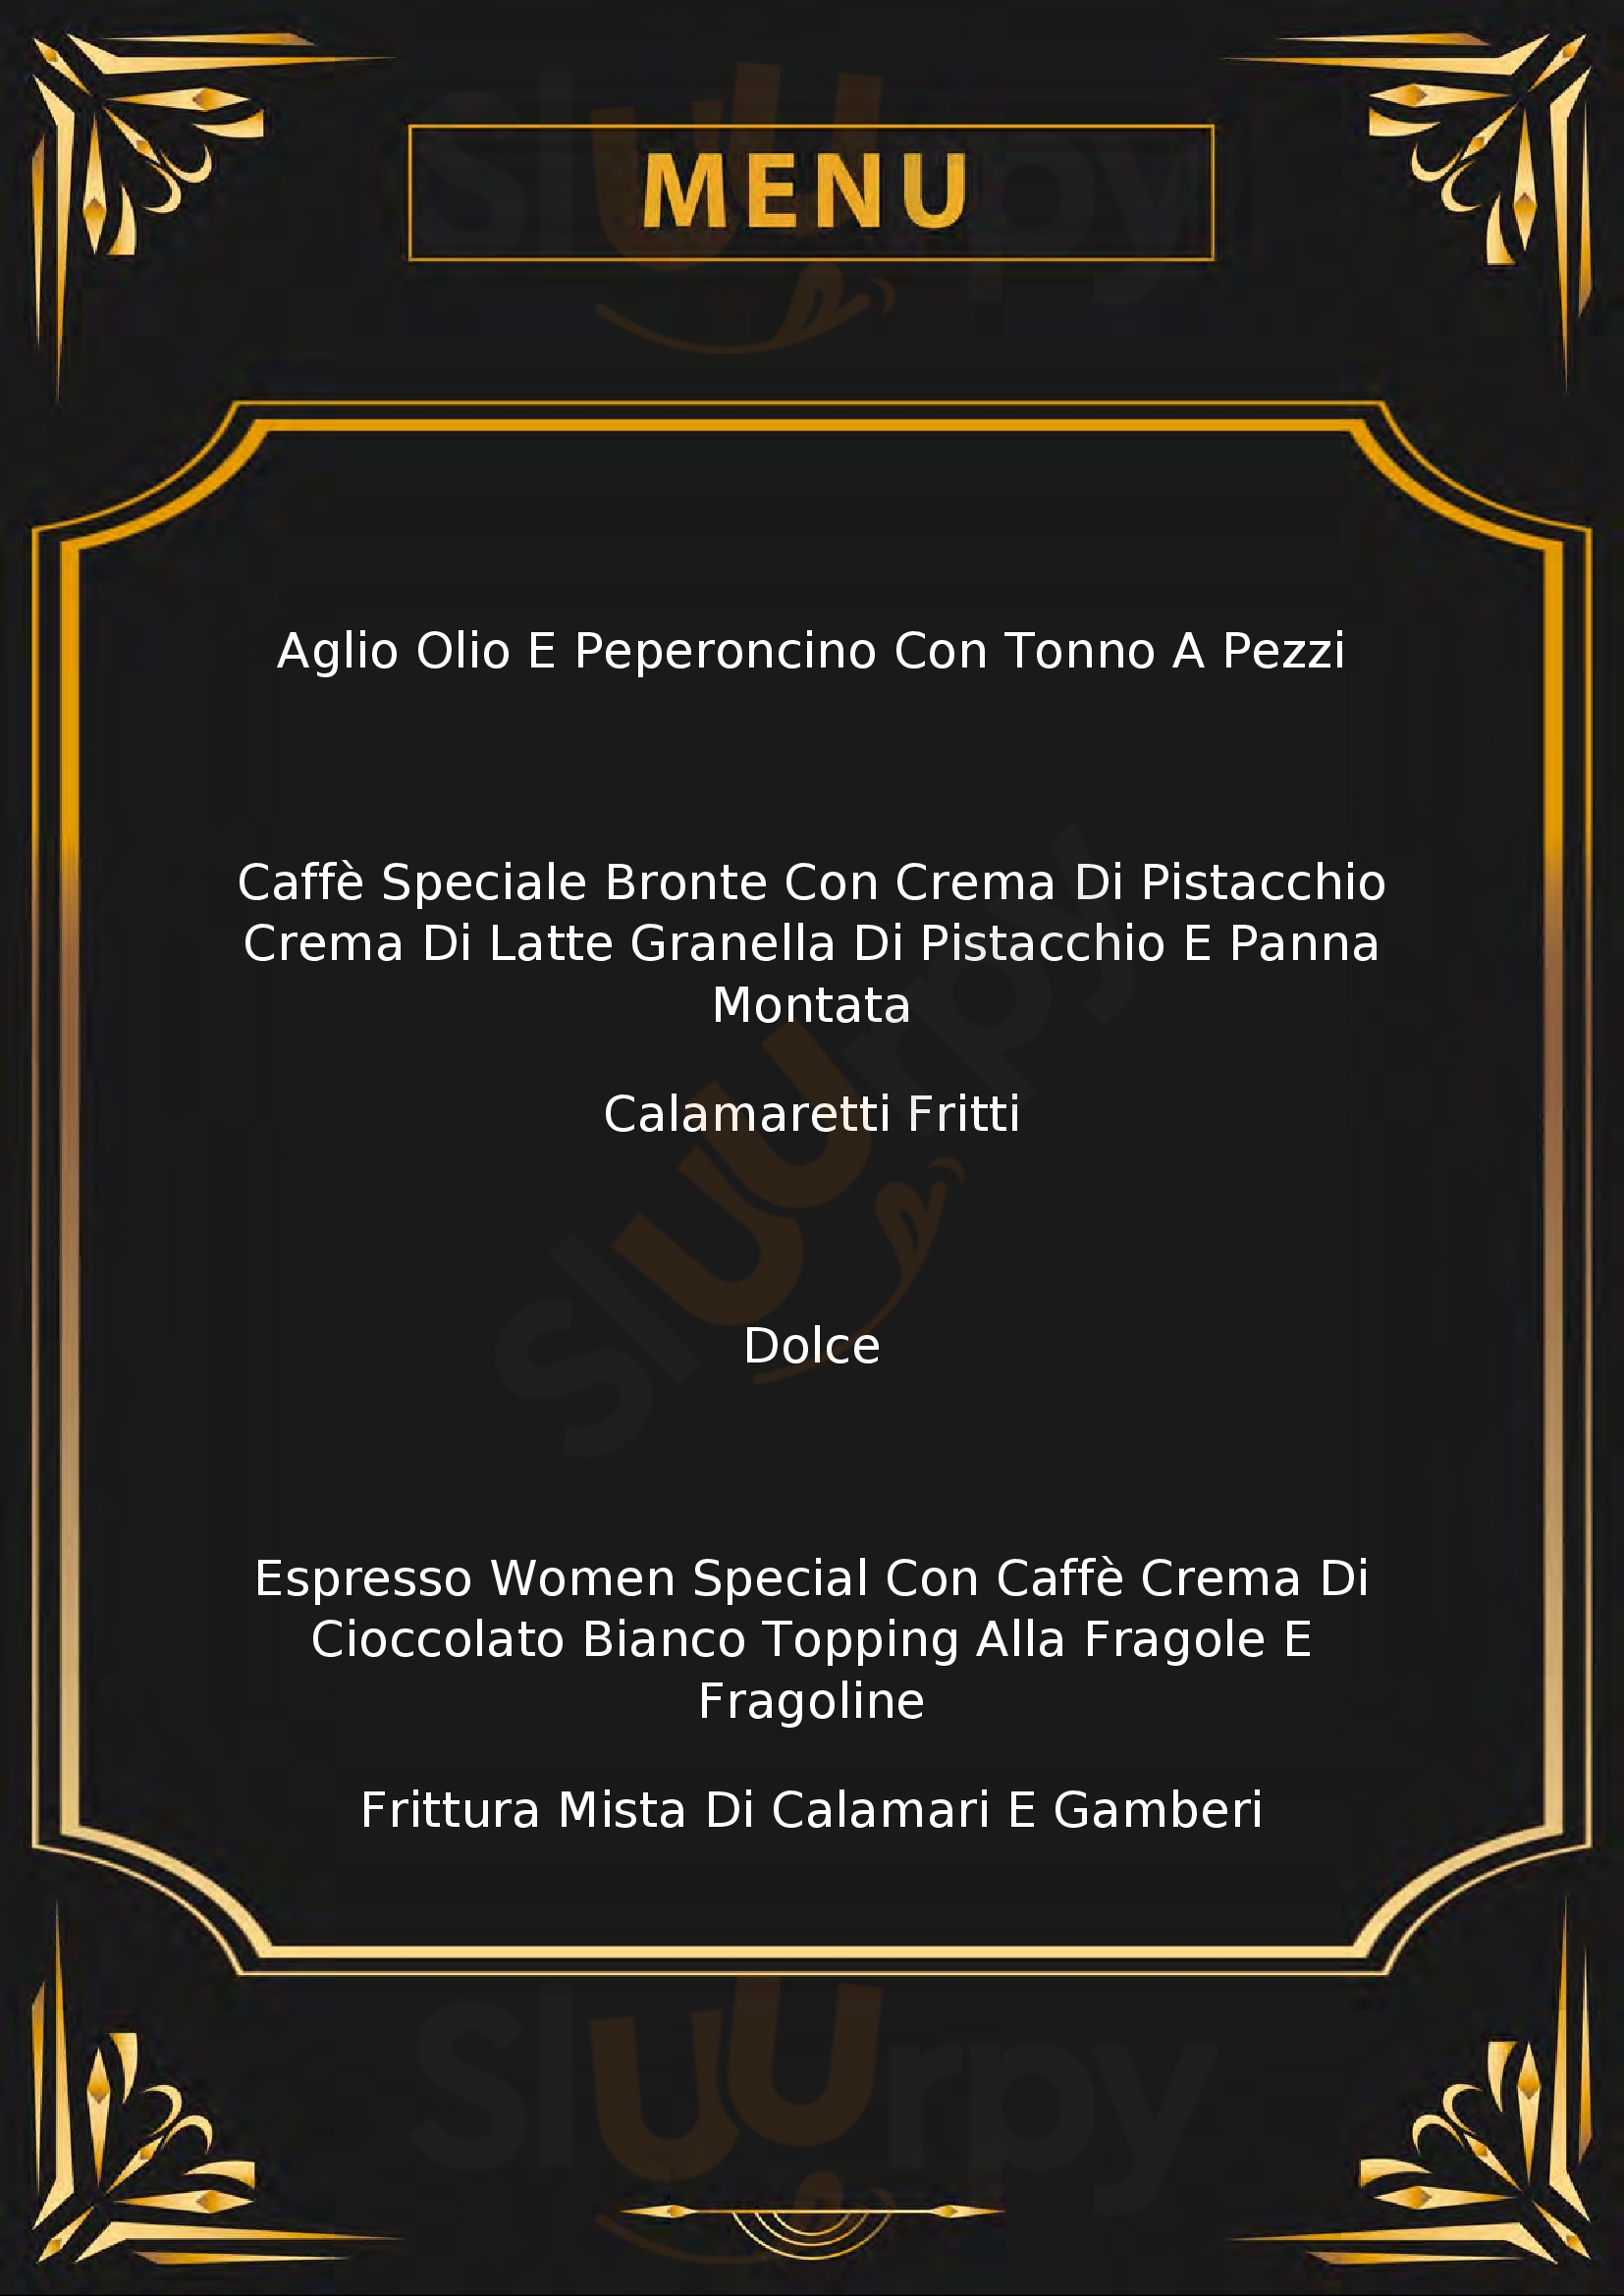 Luca's Coffee & Restaurant Modugno menù 1 pagina